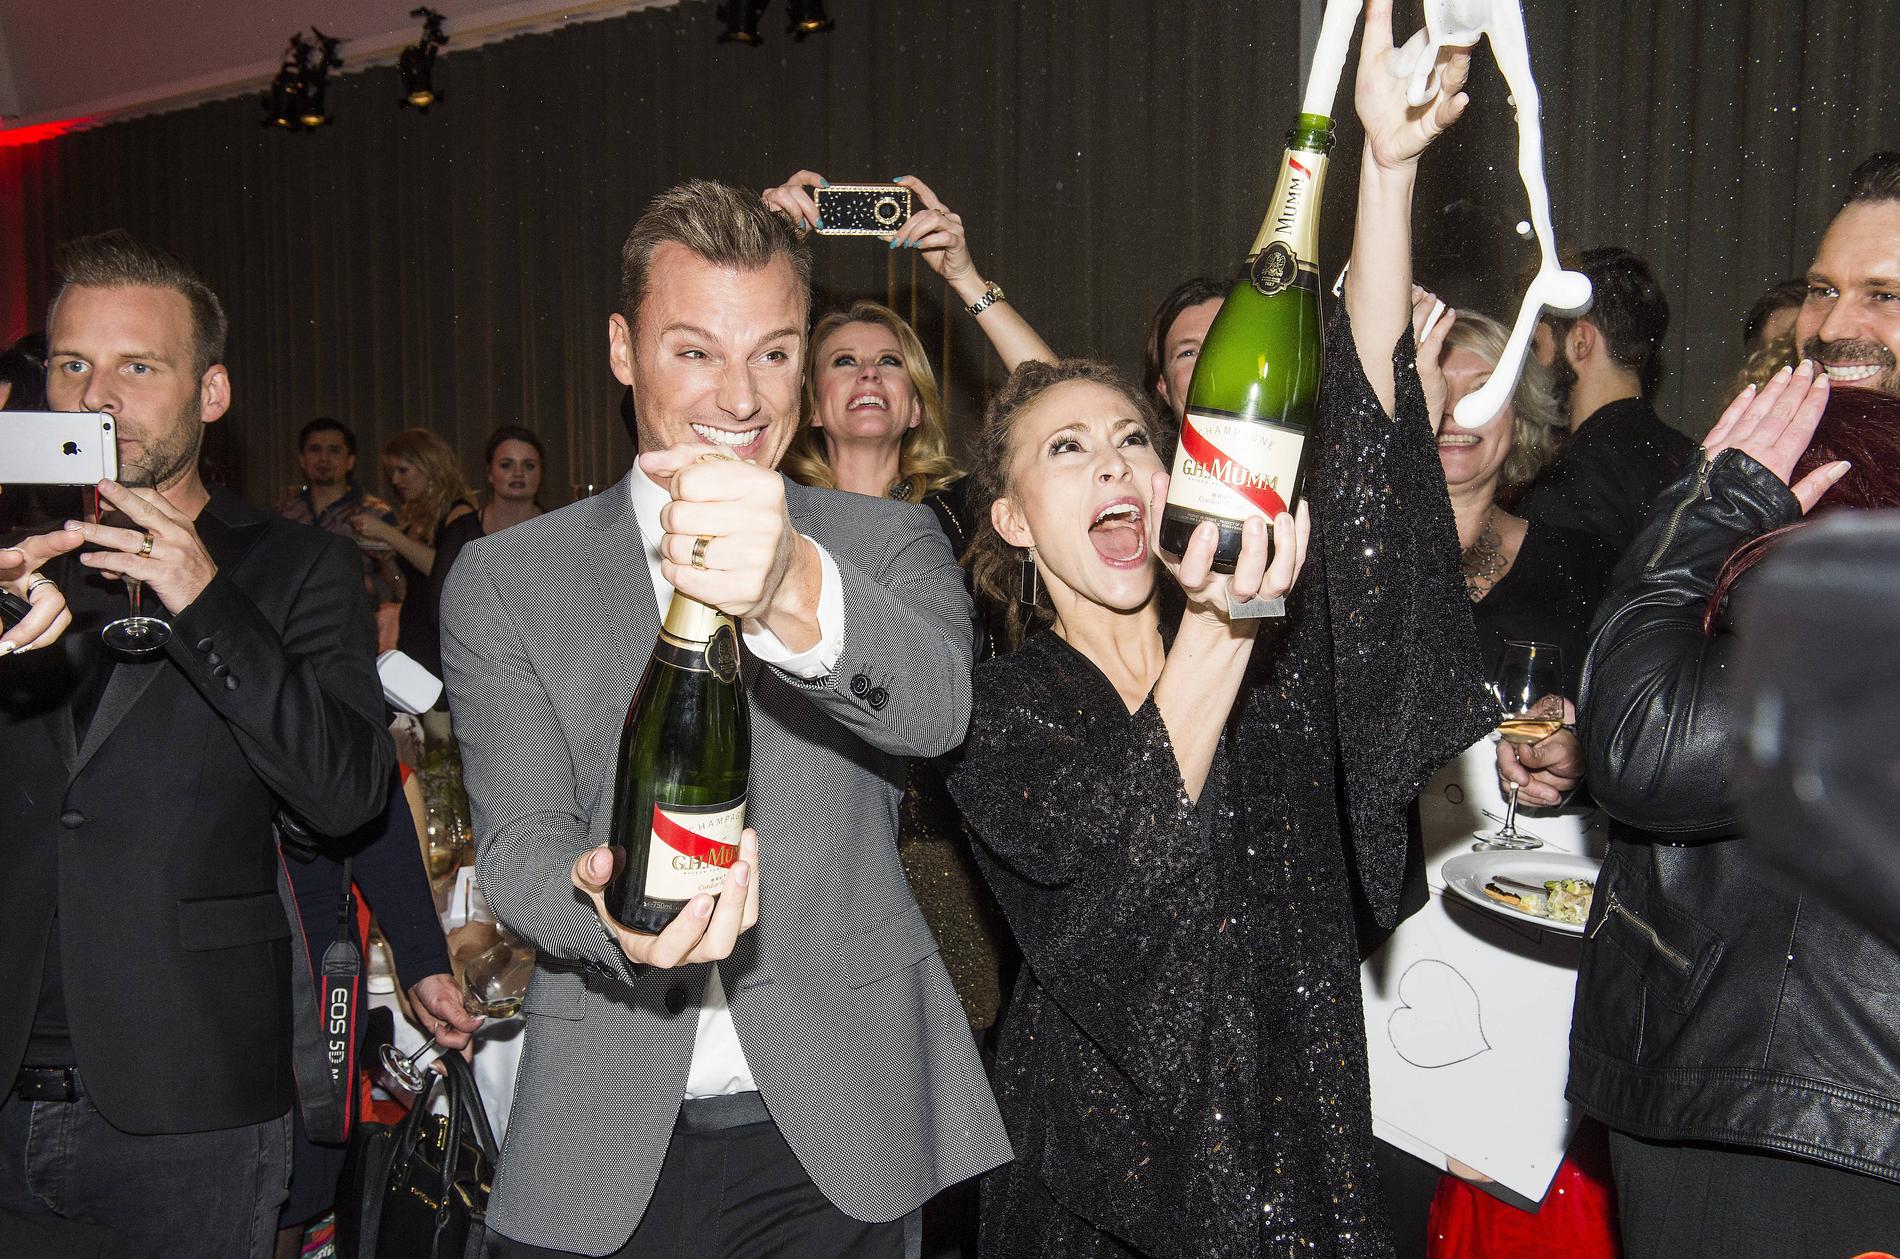 SKÅL!  Champagnen flödade när Magnus Carlsson och Mariette Hansson firade avancemanget till schlagerfinalen i natt.